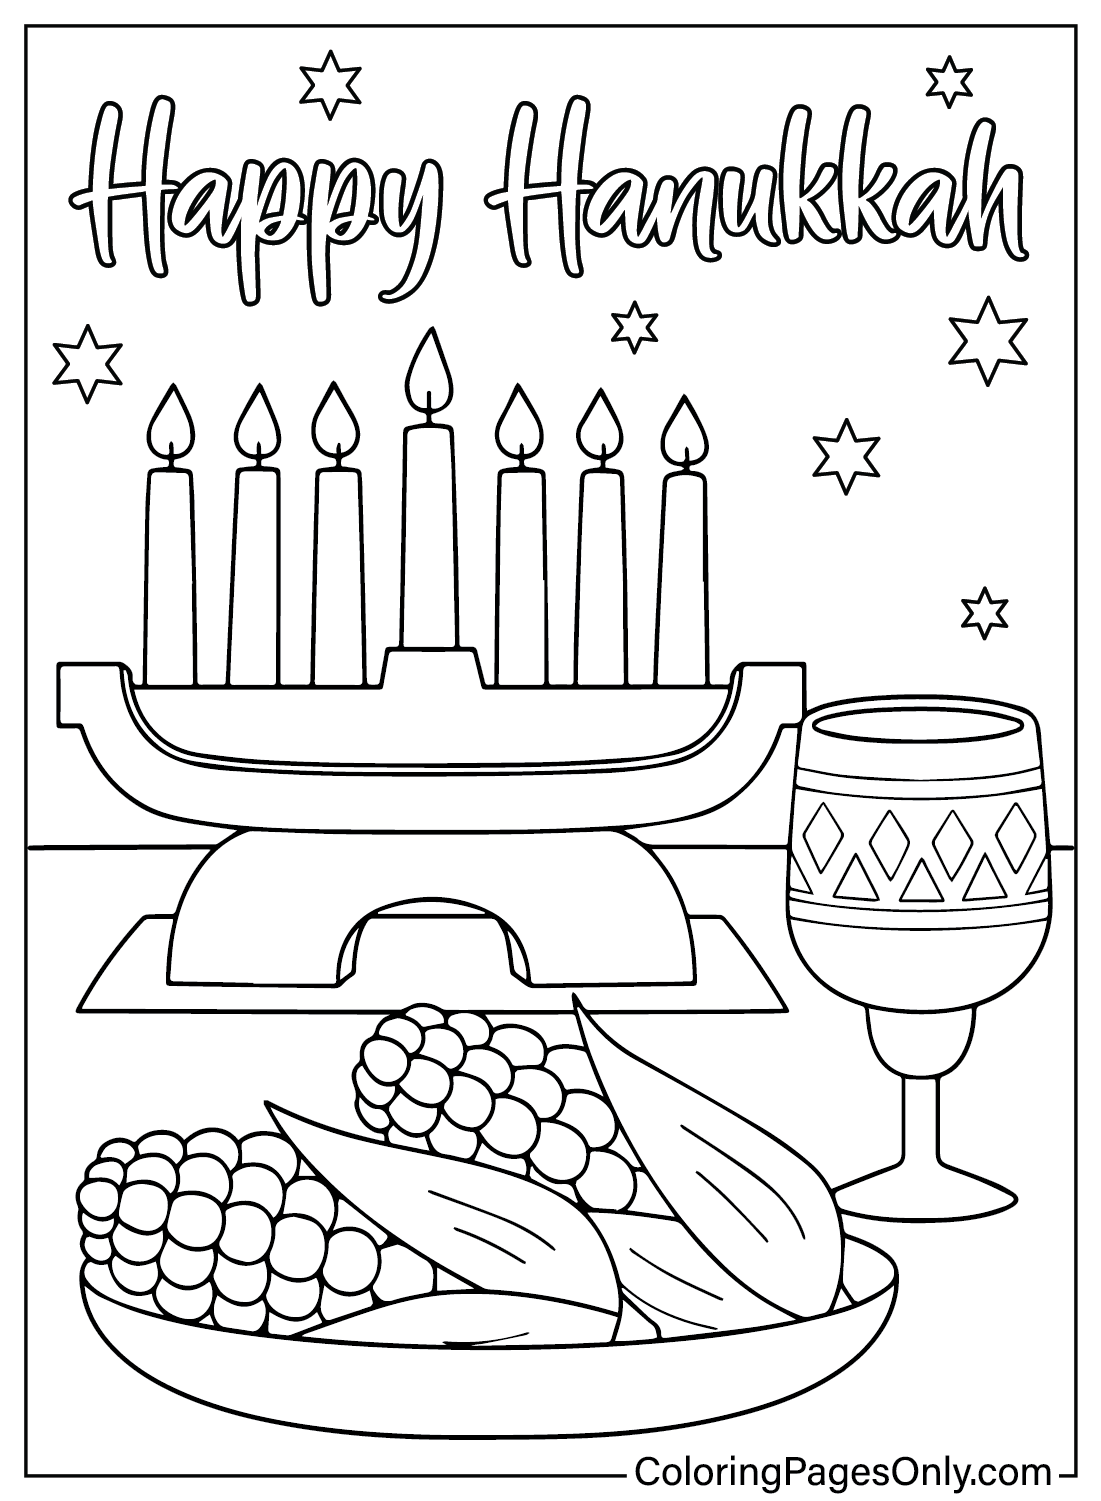 Imagens de Hanukkah para colorir de Hanukkah